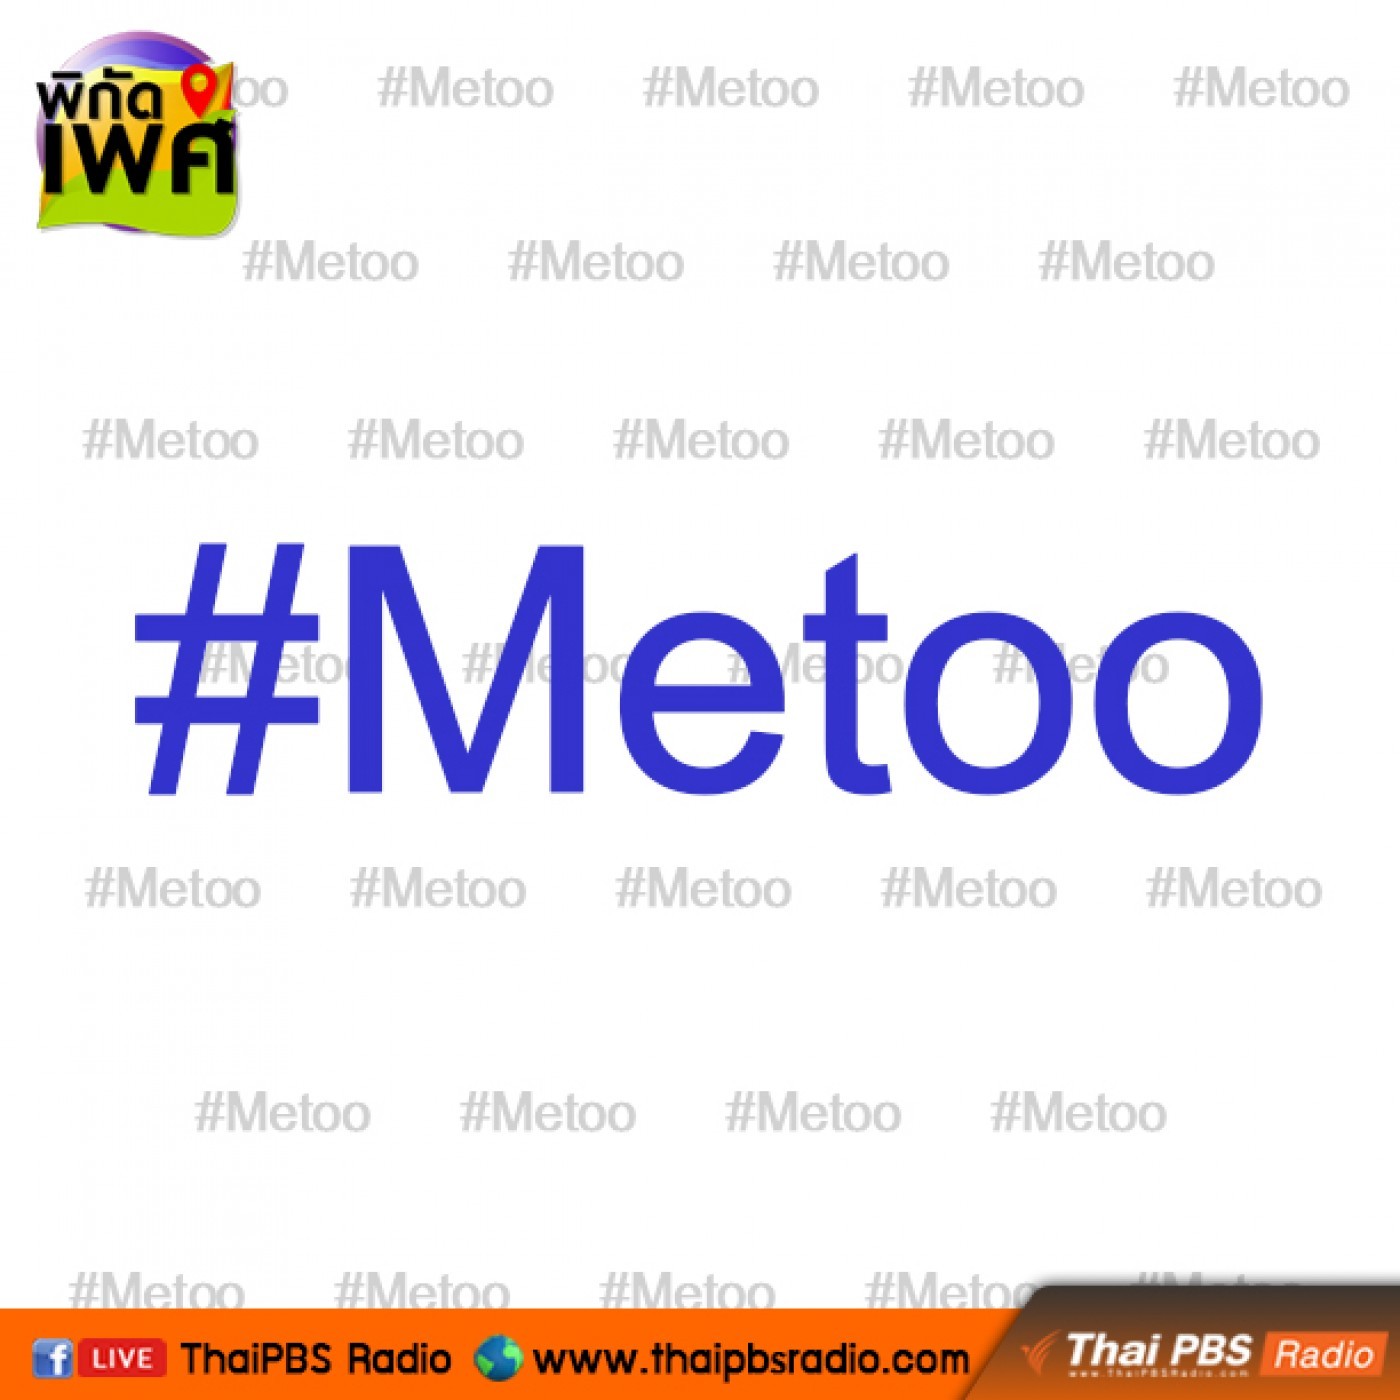 พิกัดเพศ : #Metoo เรียกร้องมากไปจนกลายเป็นลัทธิ?